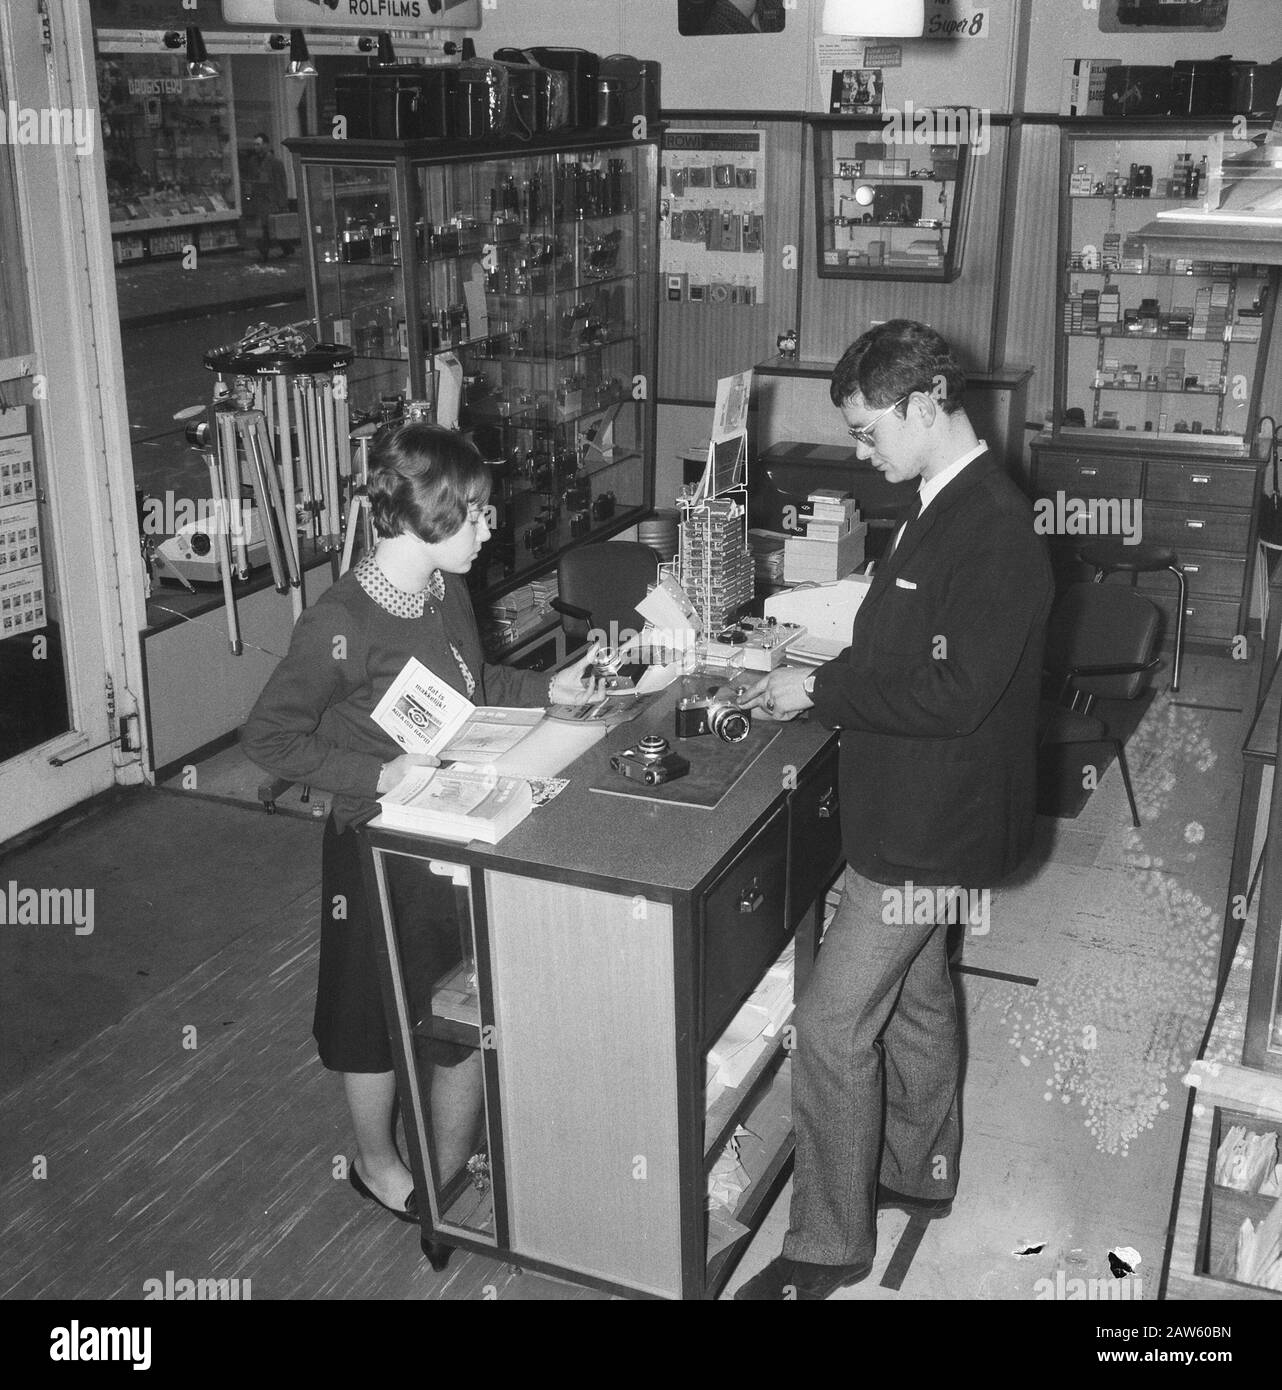 Medium-size Business, negozio di fotografia Data: 24 gennaio 1966 Parole Chiave: Fotografia, mezzo, negozi Foto Stock